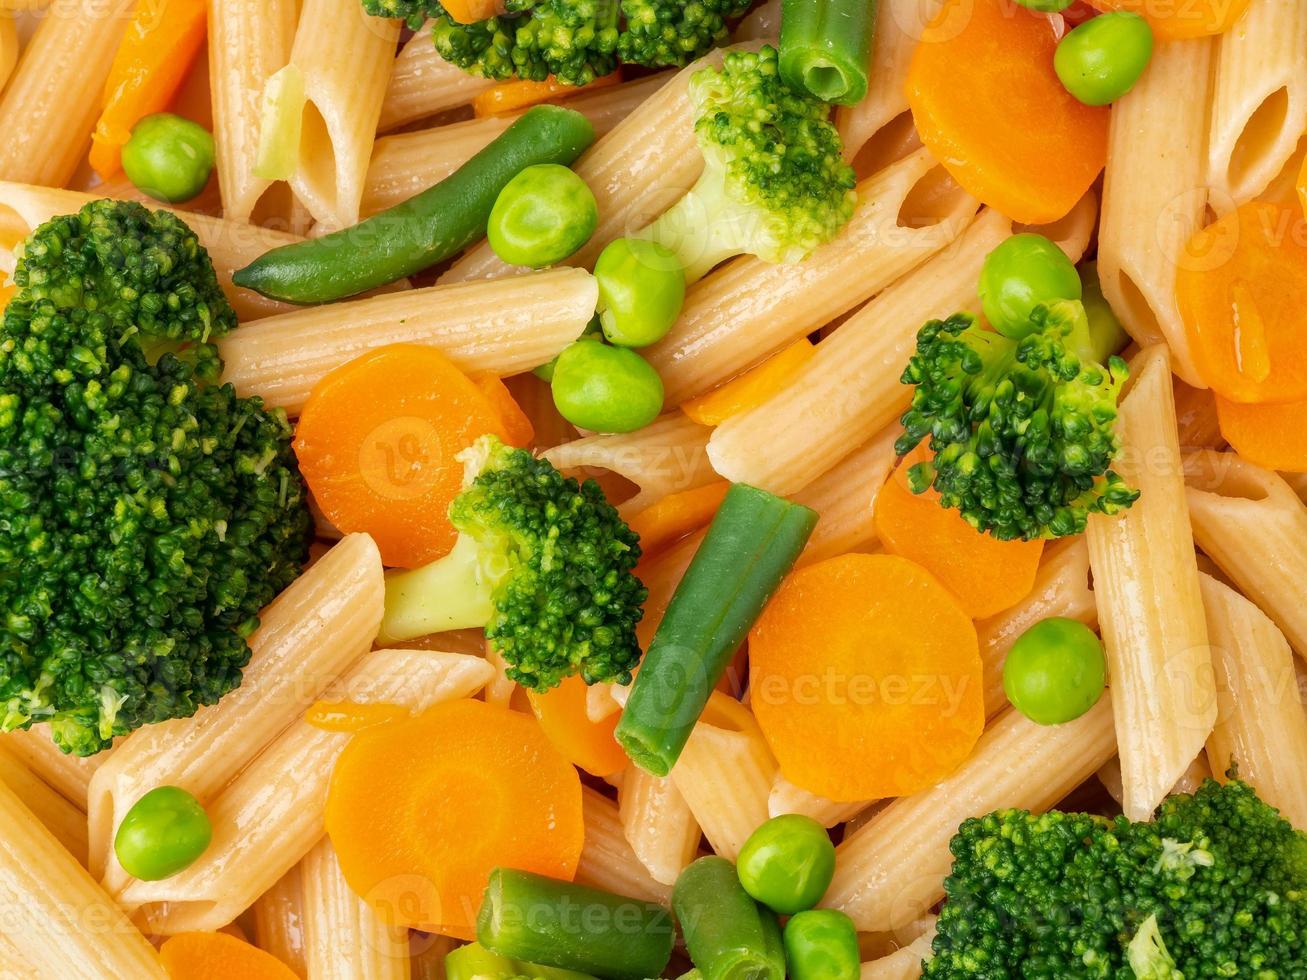 volkoren pasta penne met broccoli, wortelen, doperwtjes. close-up, macro. dieetmenu foto